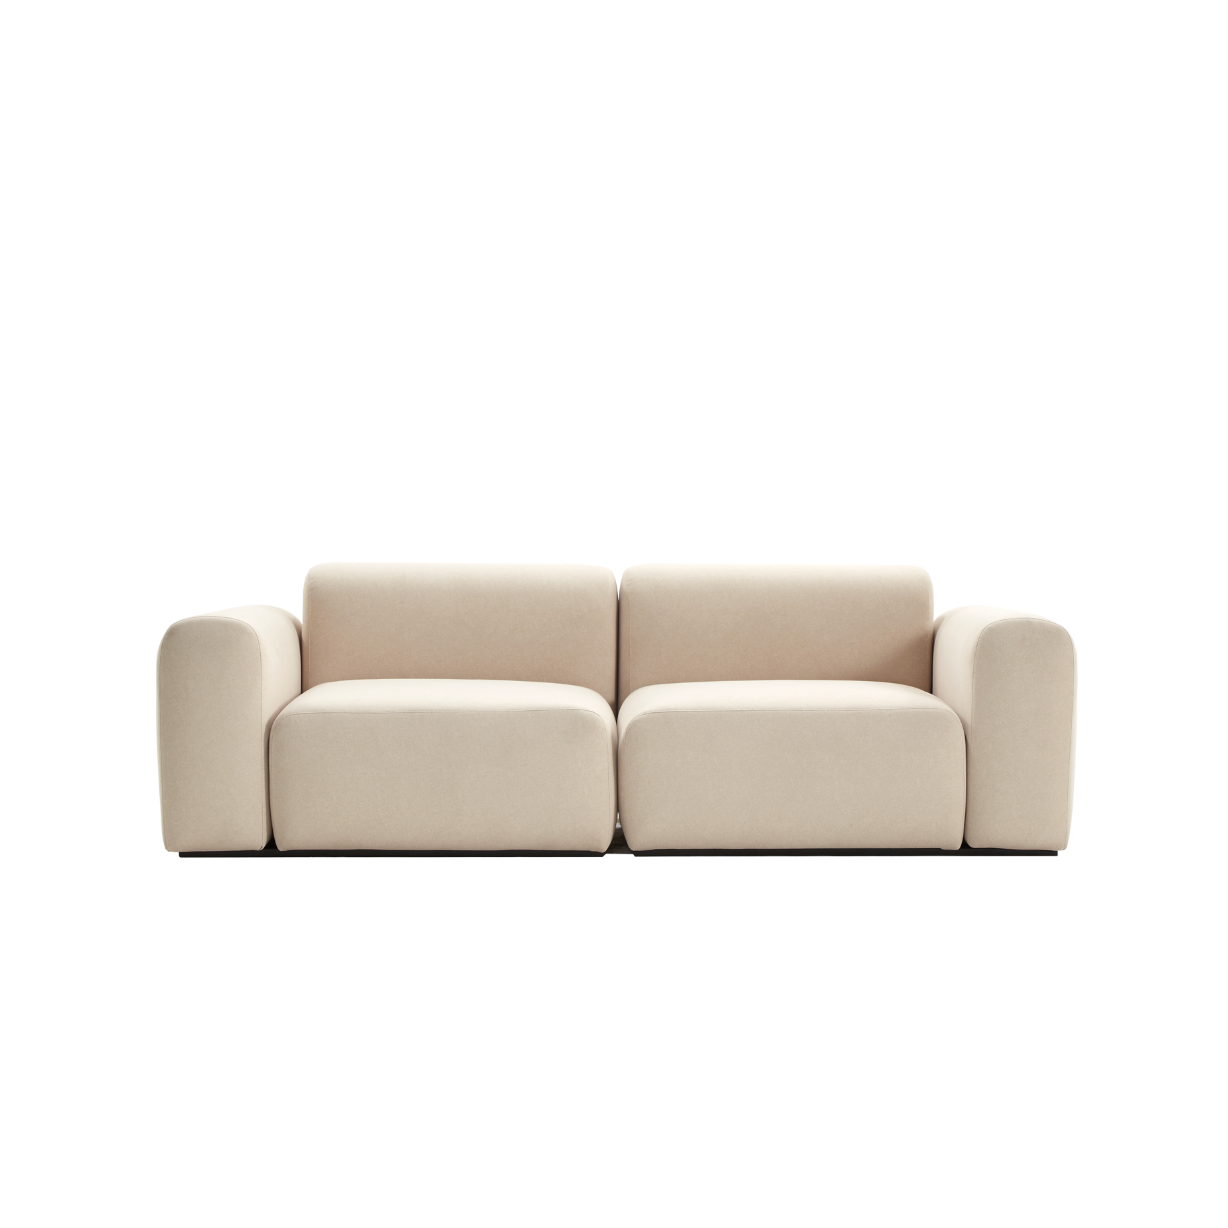 (주)도이치 DOICH ® Aquaclean PEN3 modular sofa  도이치 Pen3  3인소파 /(스페인 아쿠아클린)  [3주 주문제작]